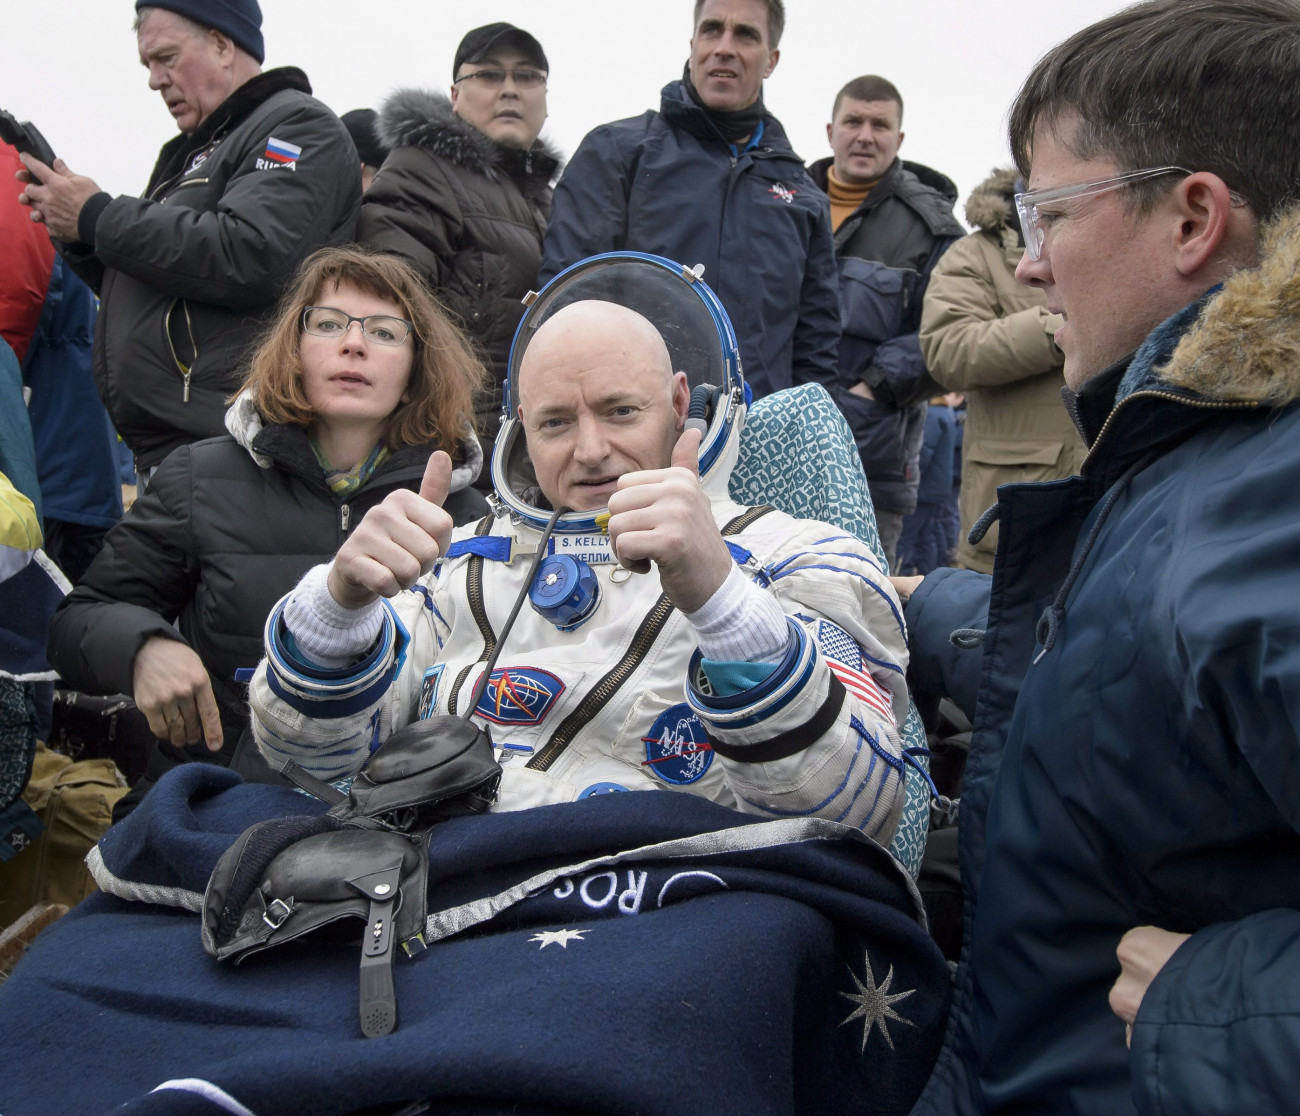 Dzsezkazgan, 2016. március 2.
Scott Kelly amerikai űrhajós, miután a Szojuz TMA-18M orosz űrhajó leszállóegységével földet ért a kazahsztáni Dzsezkazgan térségében 2016. március 2-án. Kelly és Mihail Kornyijenko orosz űrhajós egyévi űrbéli tartózkodás után, harmadik társuk, Szergej Volkov orosz asztronauta hat hónap után tért vissza a Nemzetközi Űrállomásról. (MTI/EPA/NASA/Bill Ingals)